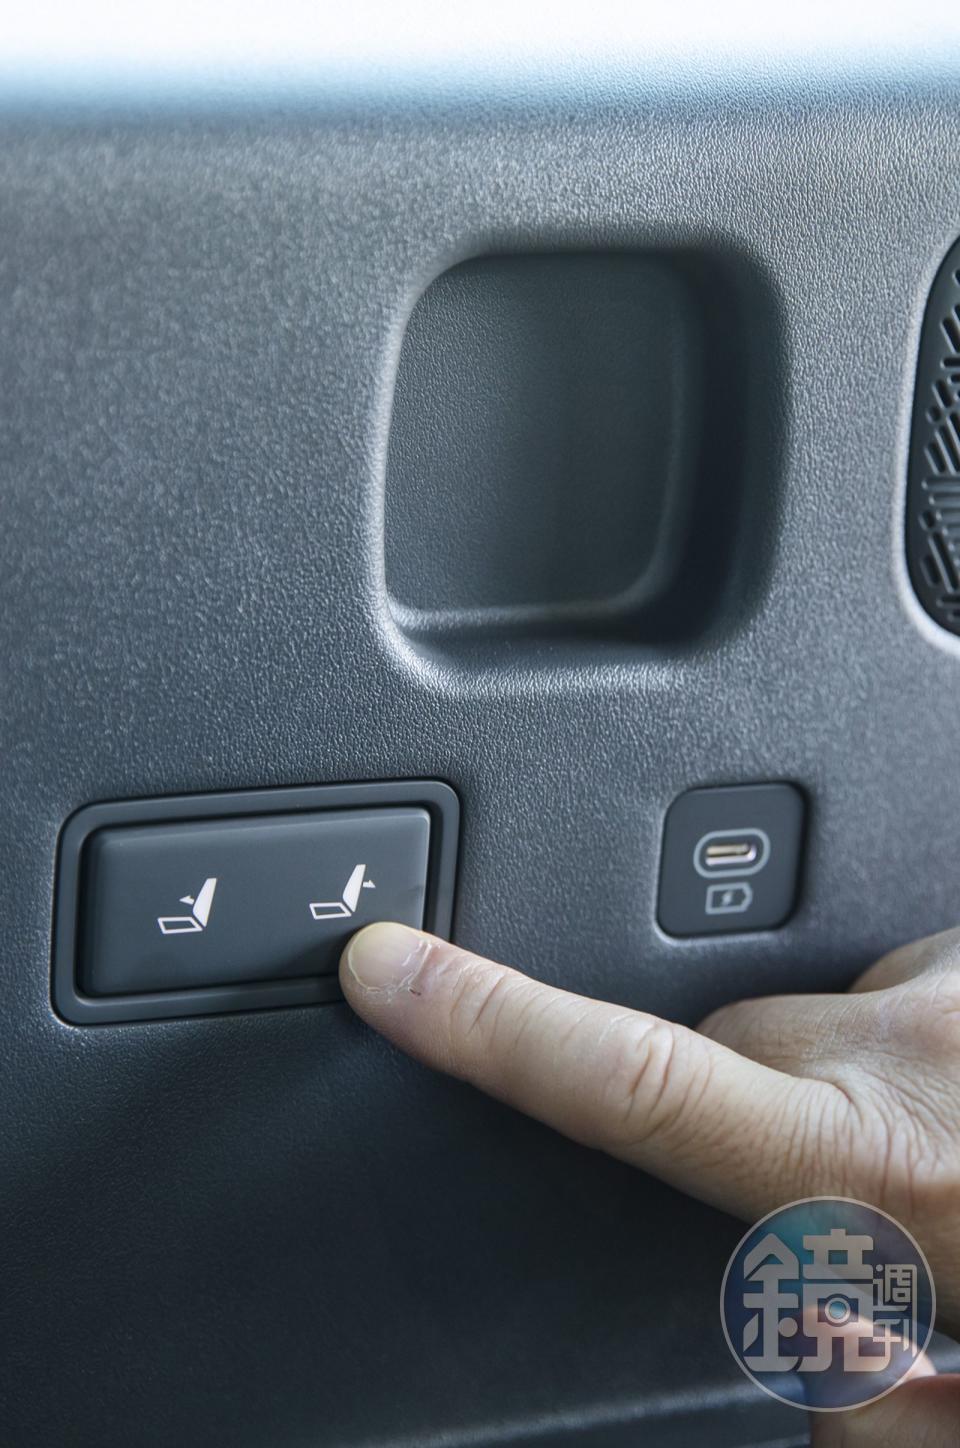 第三排的角度控制和傾倒收納都是電動的，甚至可以通過中控螢幕直接控制，這對不熟悉操作的乘客來說尤為便利。